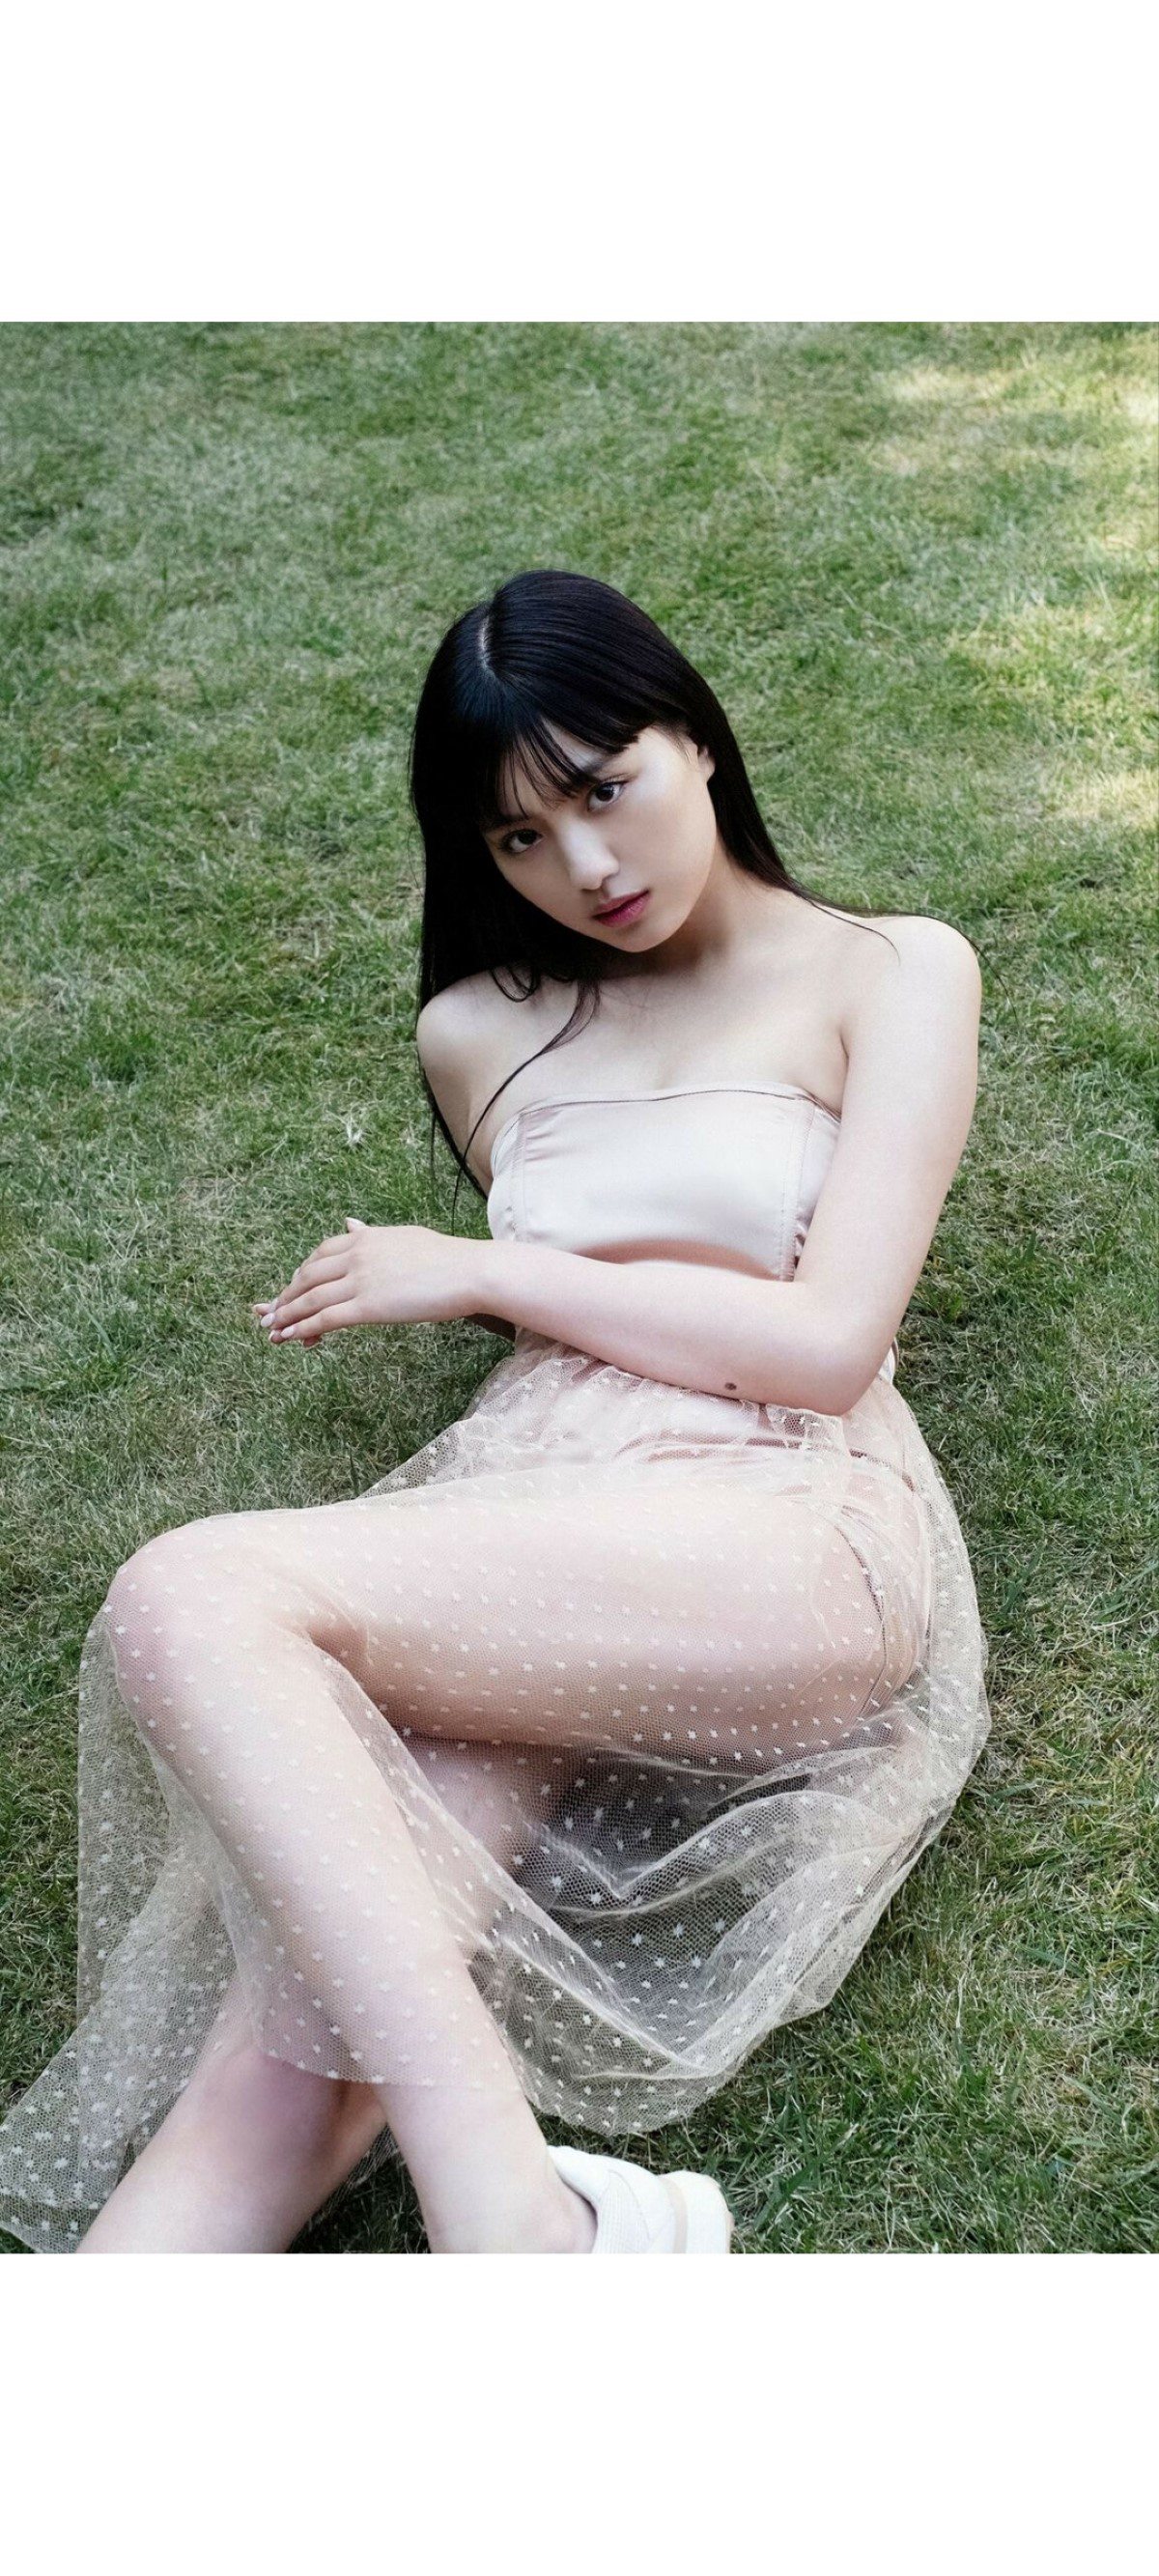 Weekly Photobook 2020 12 07 Noa Tsurushima 鶴嶋乃愛 A natural actress 生まれながらにして女優 0023 9323568037.jpg